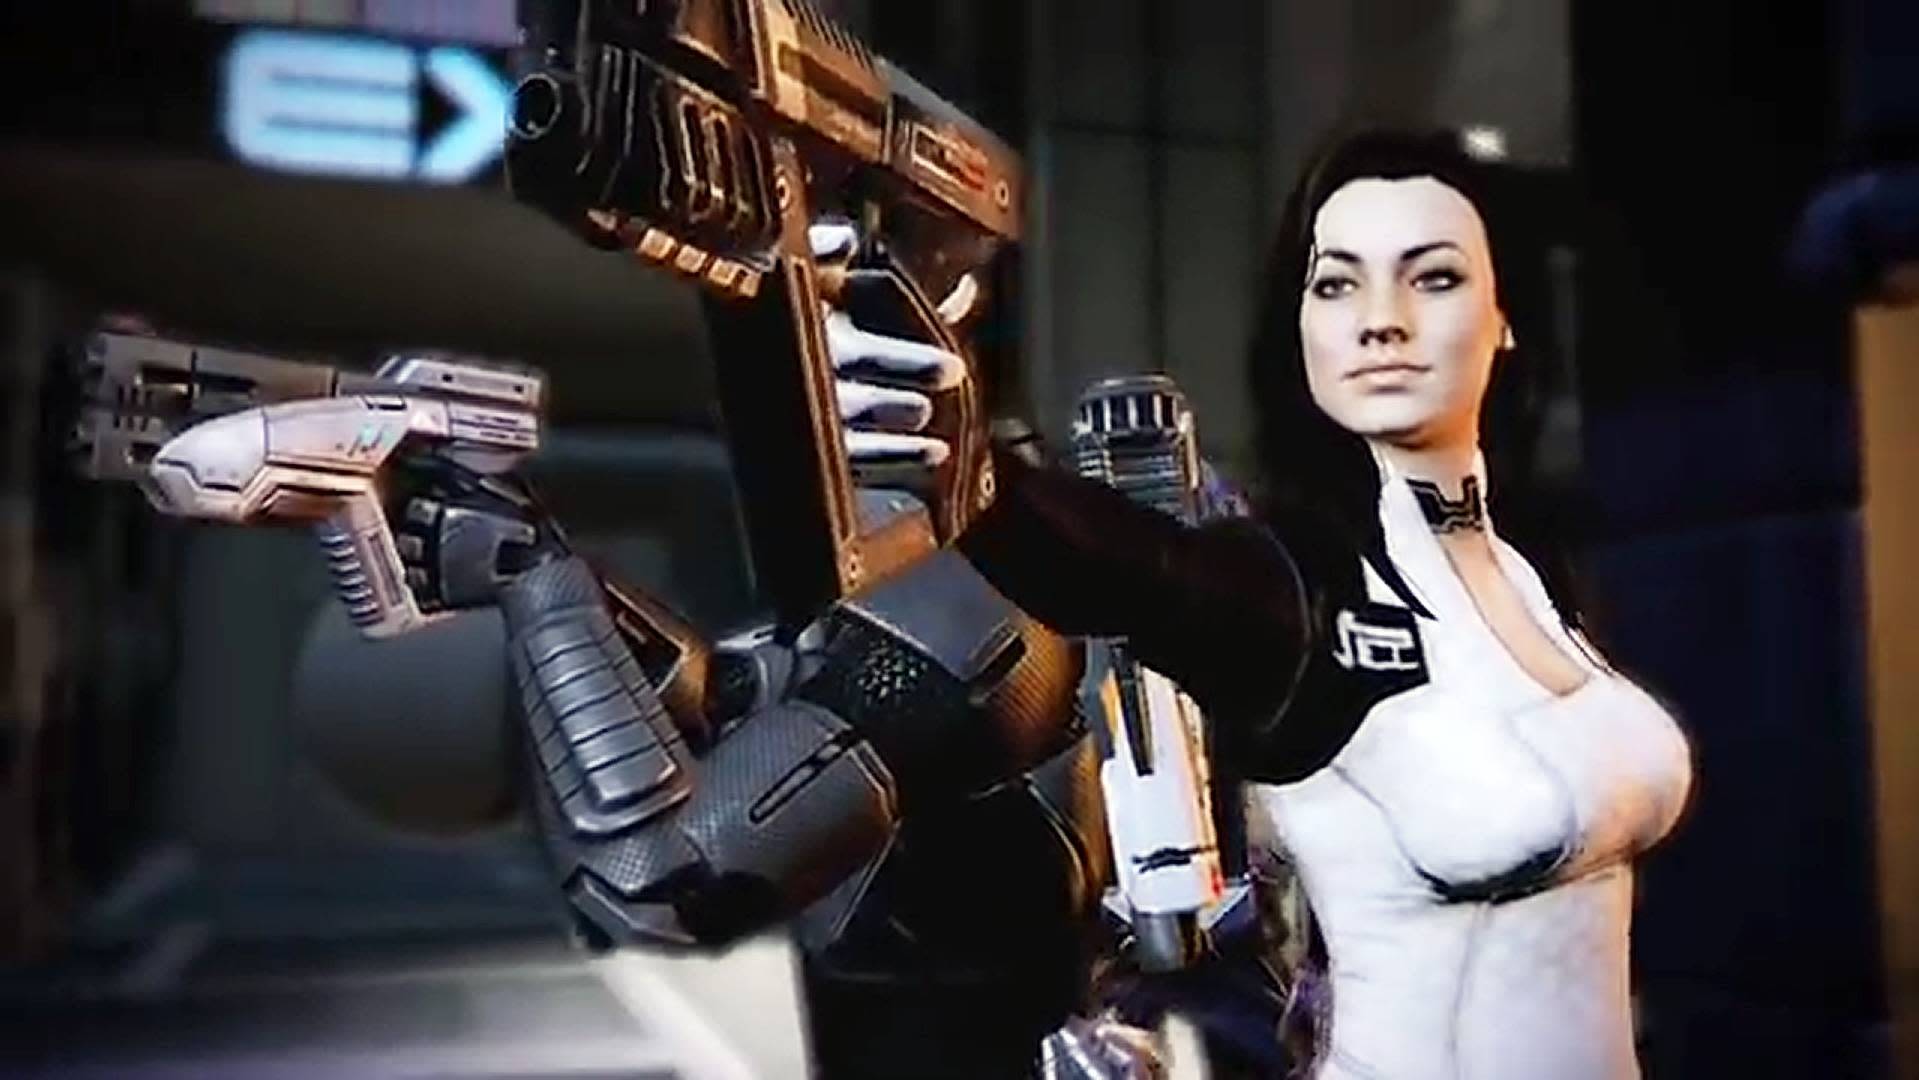 Mass Effect 4: истории из жизни, советы, новости, юмор и картинки — Все посты | Пикабу